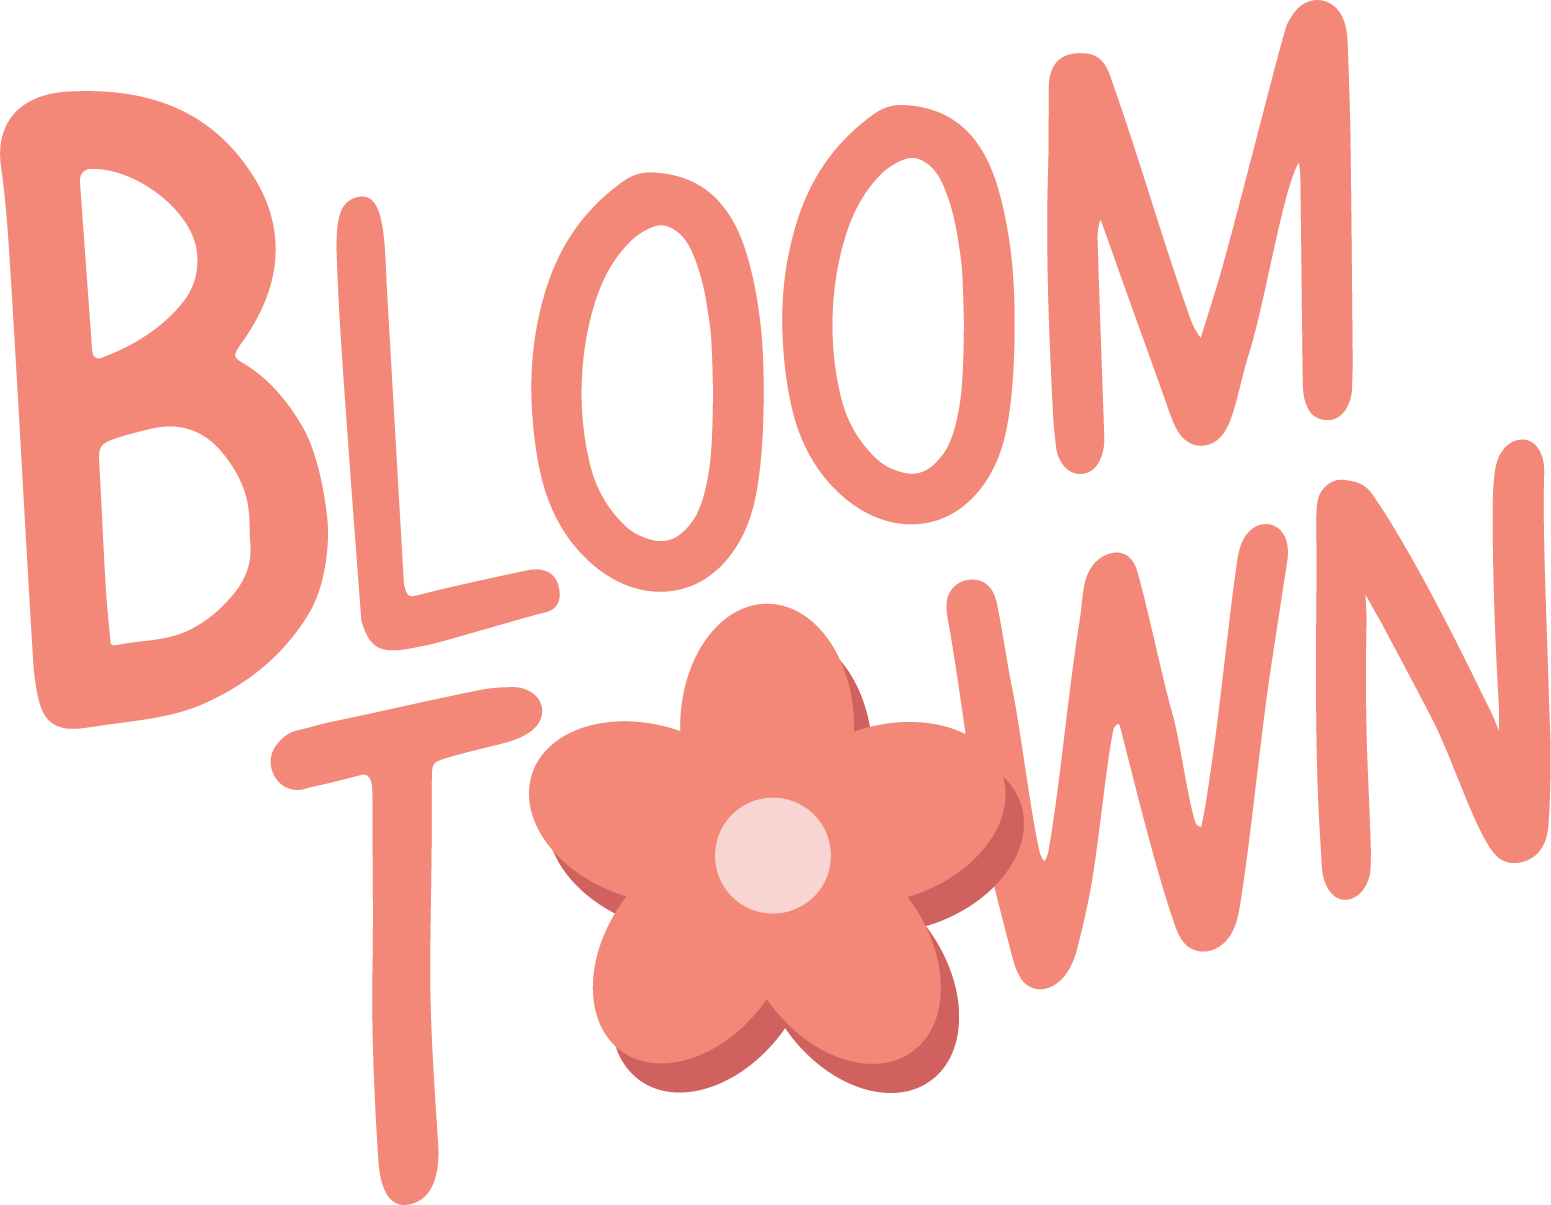 Bloomtown